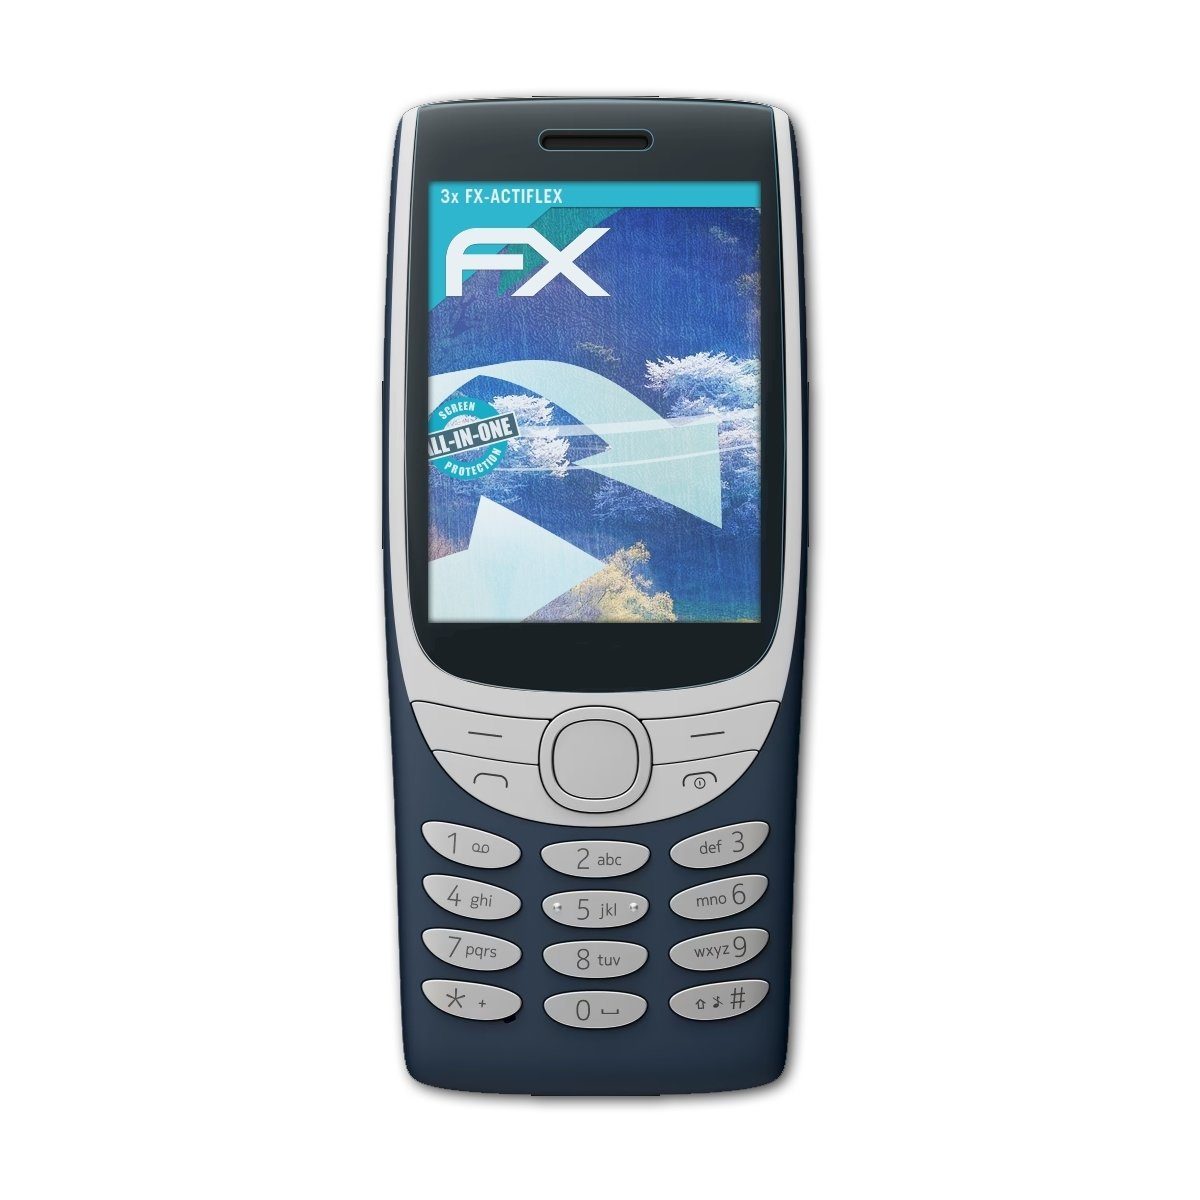 atFoliX Schutzfolie Displayschutzfolie für Nokia 8210 4G, (3 Folien), Ultraklar und flexibel